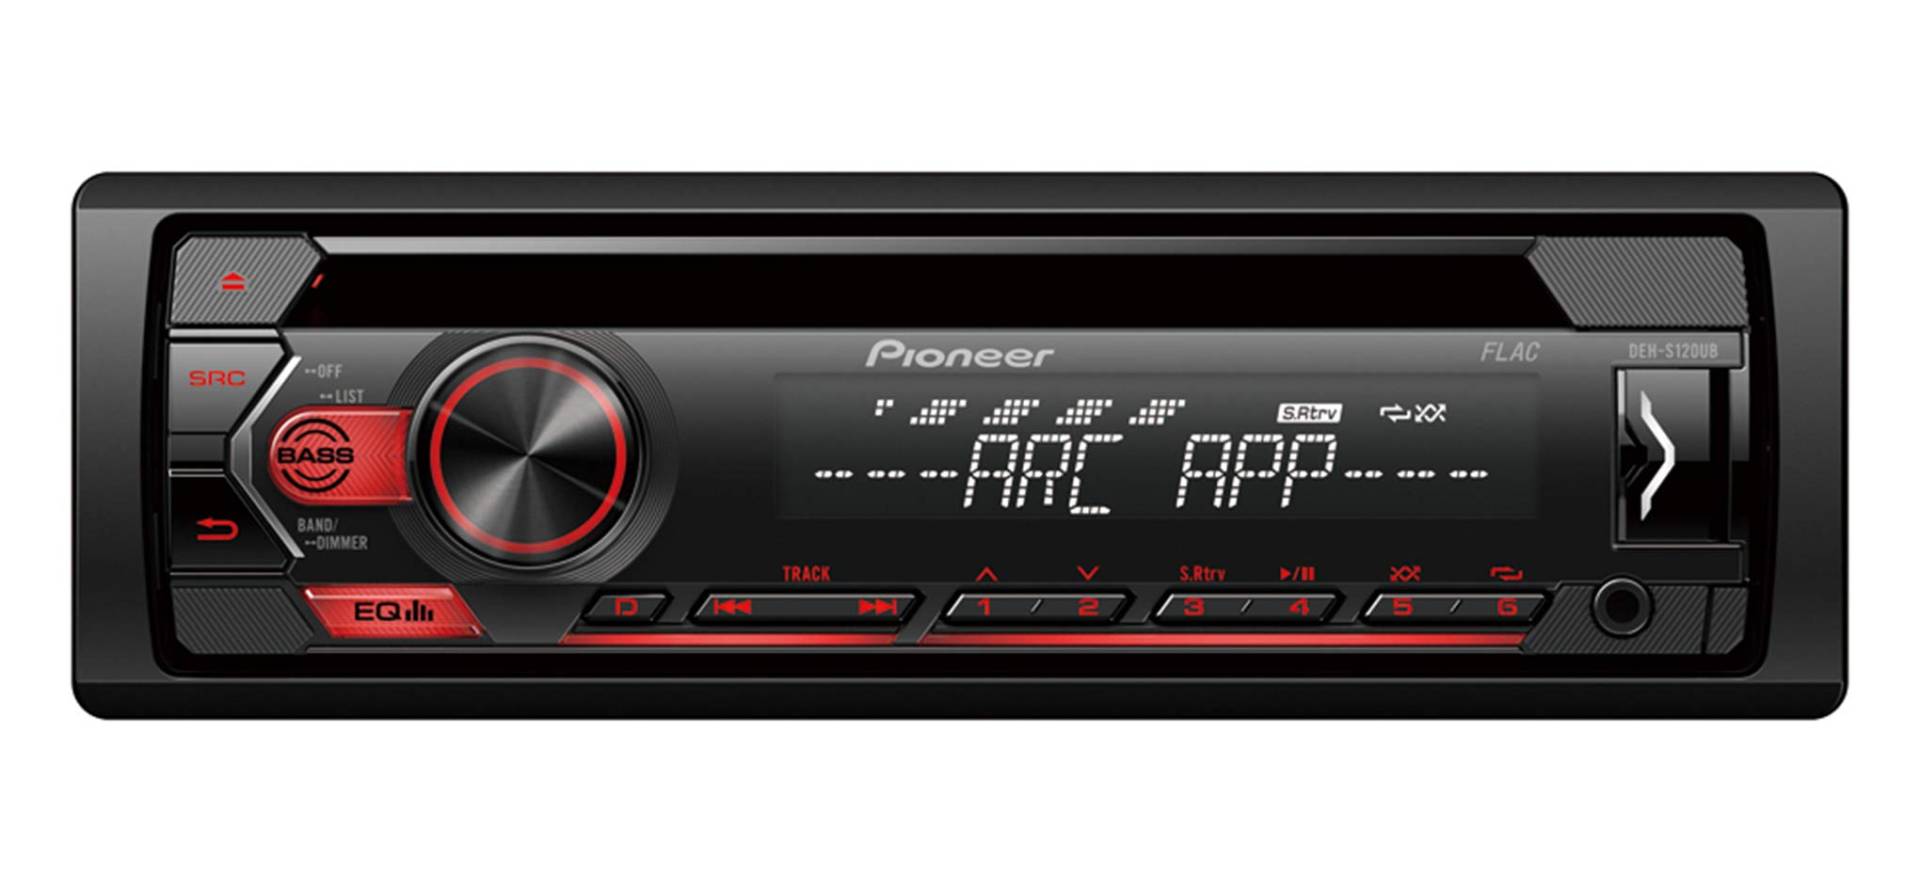 Pioneer DEH-S120UB 1DIN RDS-Autoradio mit roter Tastenbeleuchtung , Display weiß ,Android-Unterstützung , 5-Band Equalizer , CD , MP3 , USB , AUX-Eingang , ARC App von Pioneer